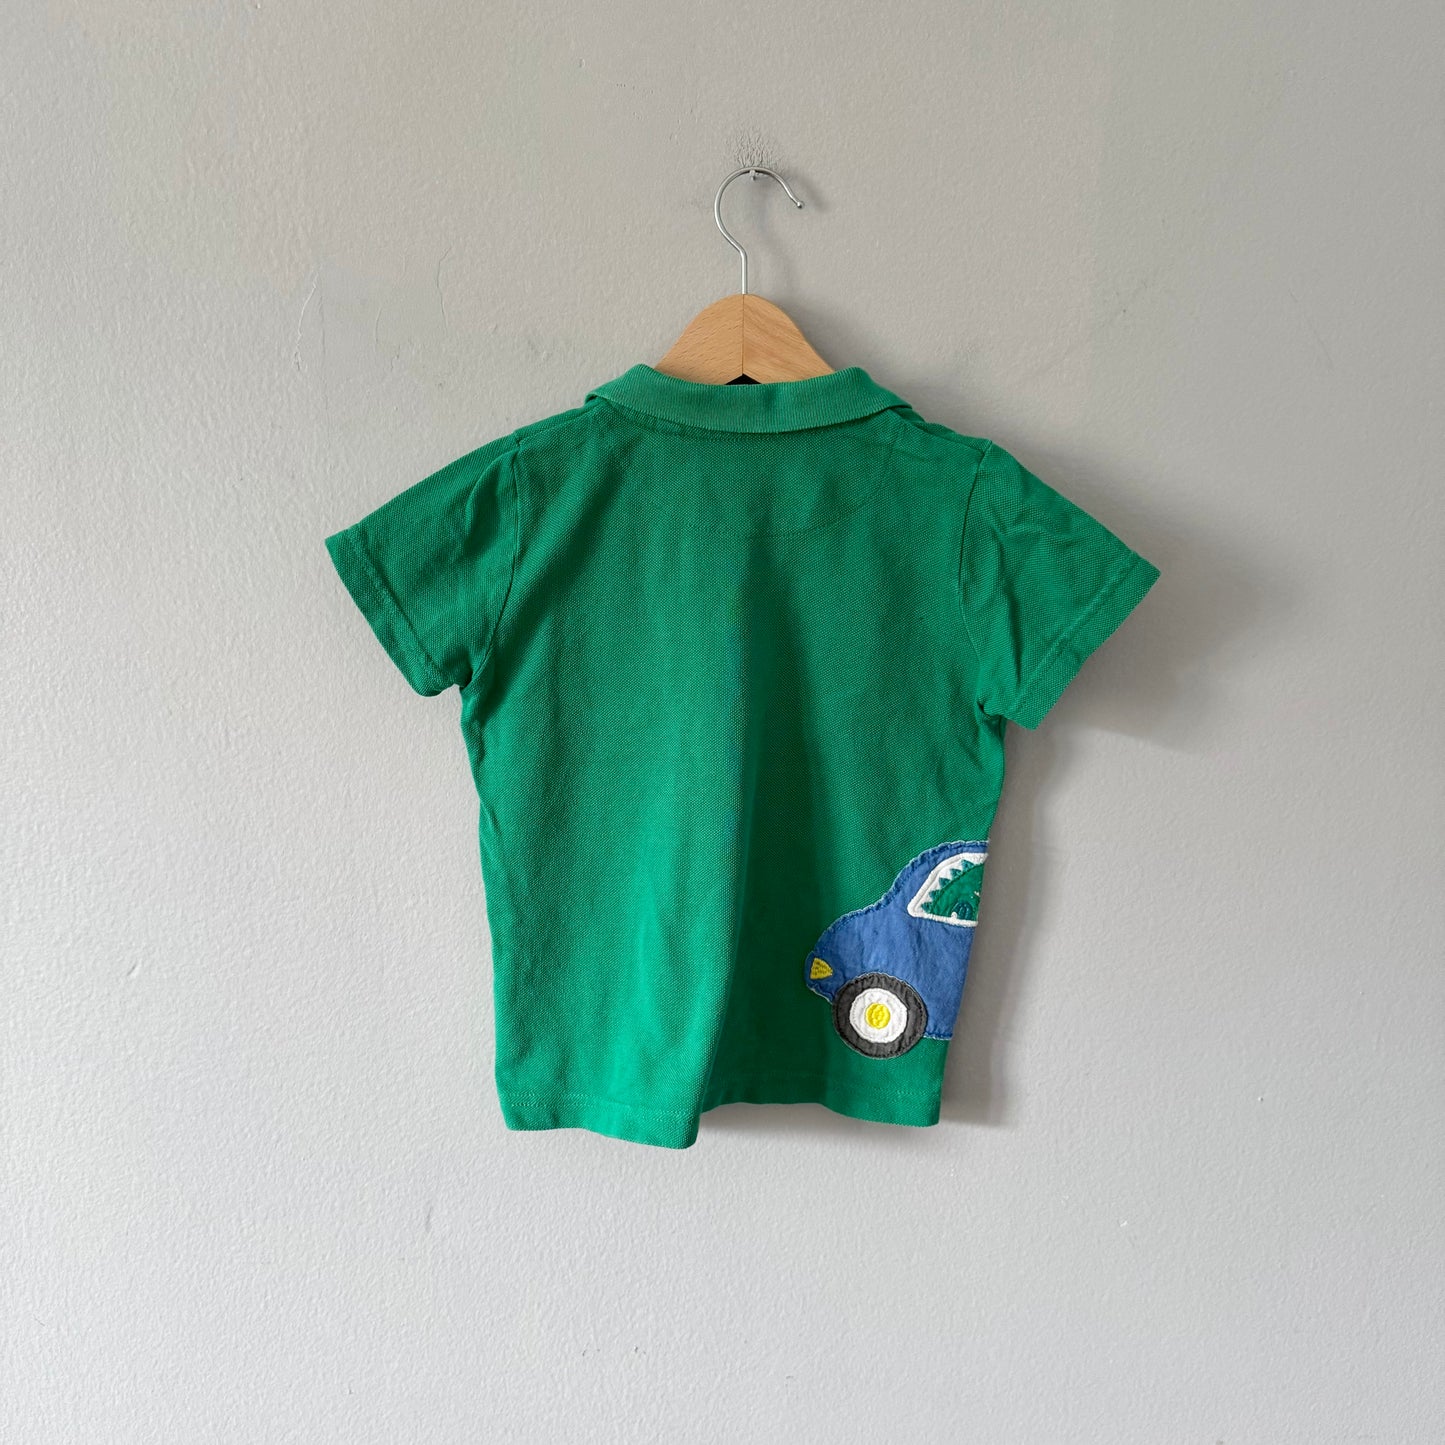 Mini Boden / Green polo shirt / 2-3Y